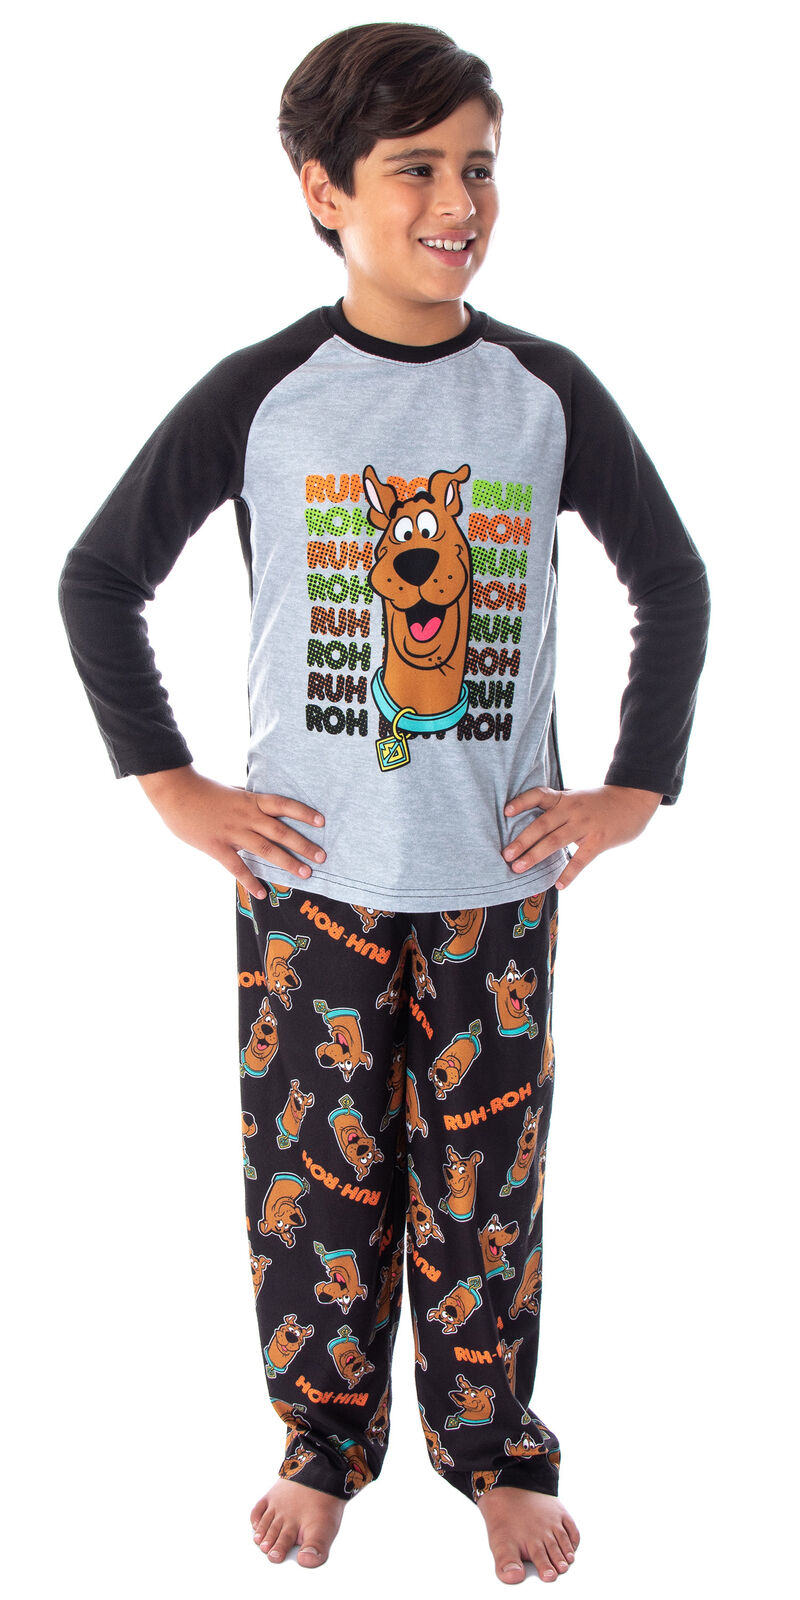 Scooby Doo Boys' PJS Ruh-Roh! Pajamas Raglan Shirt and Pants Sleep Set